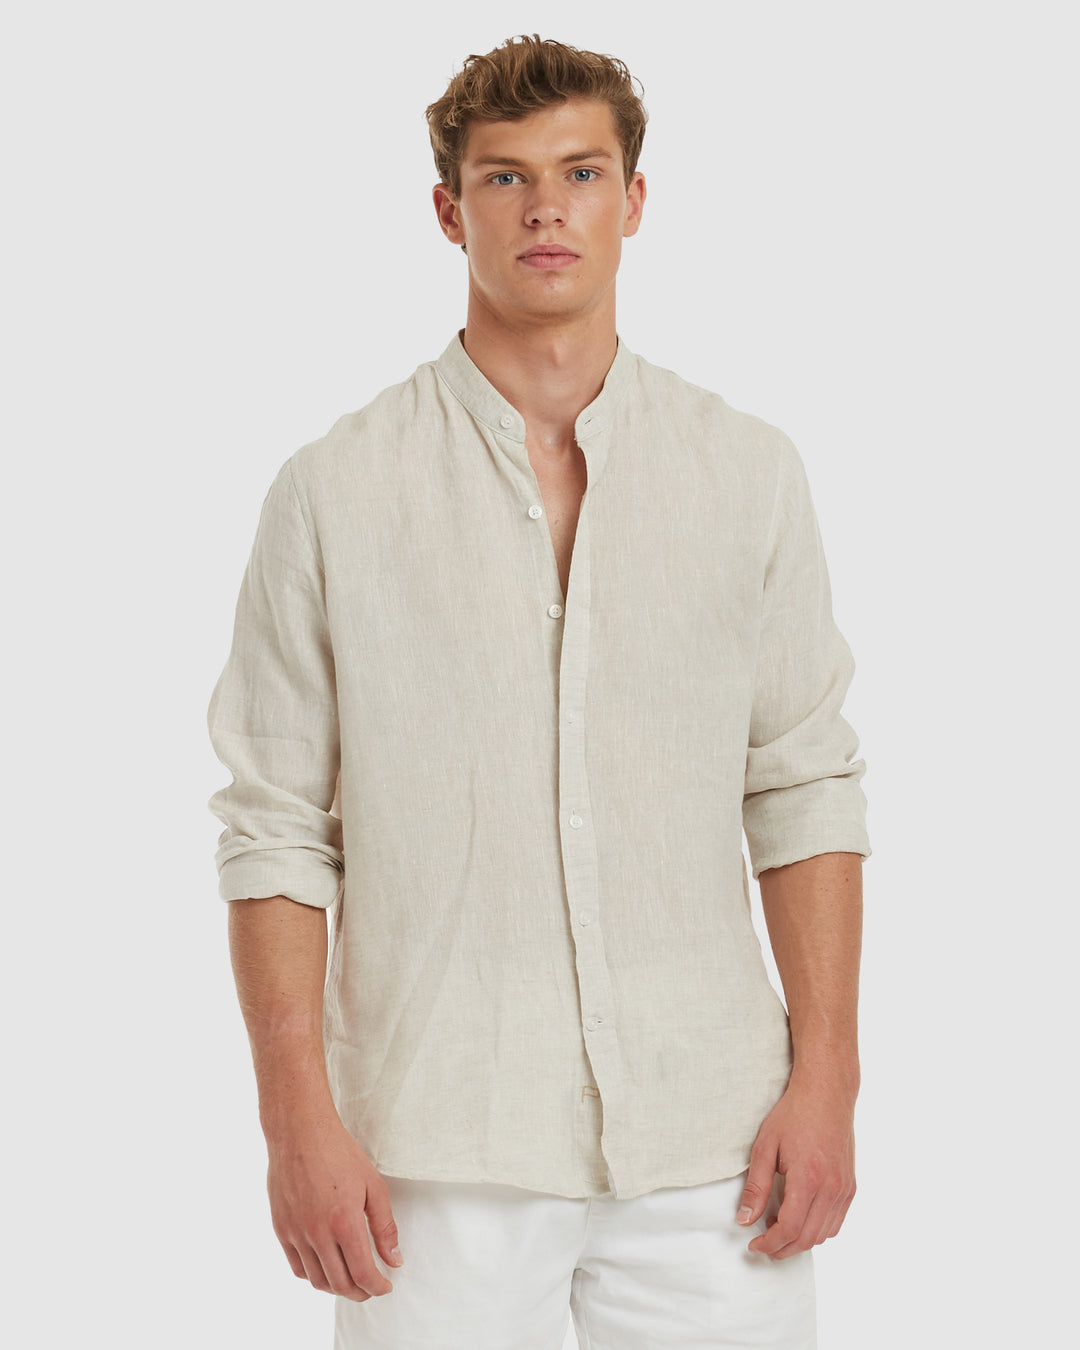 Men's Mandarin Collar Shirts – CAMIXA